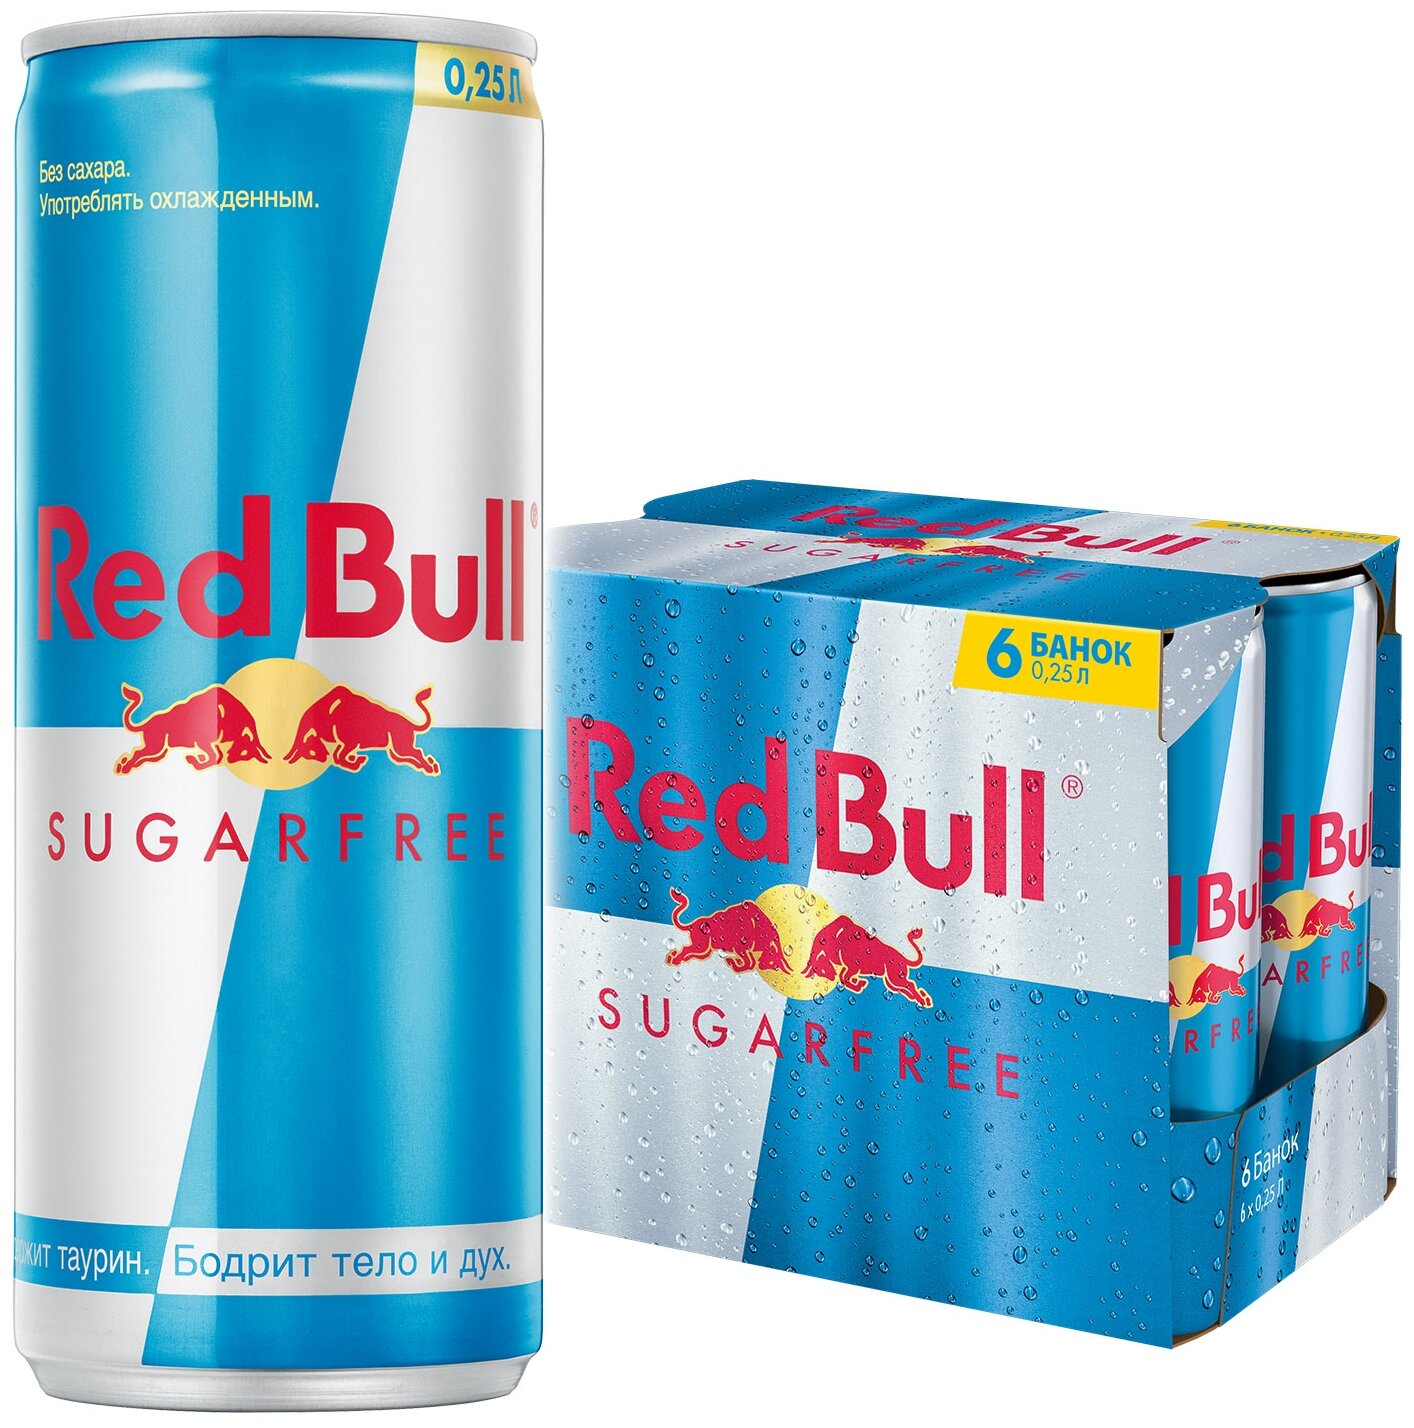 Энергетический напиток Red Bull без сахара 0,25, 6 шт.